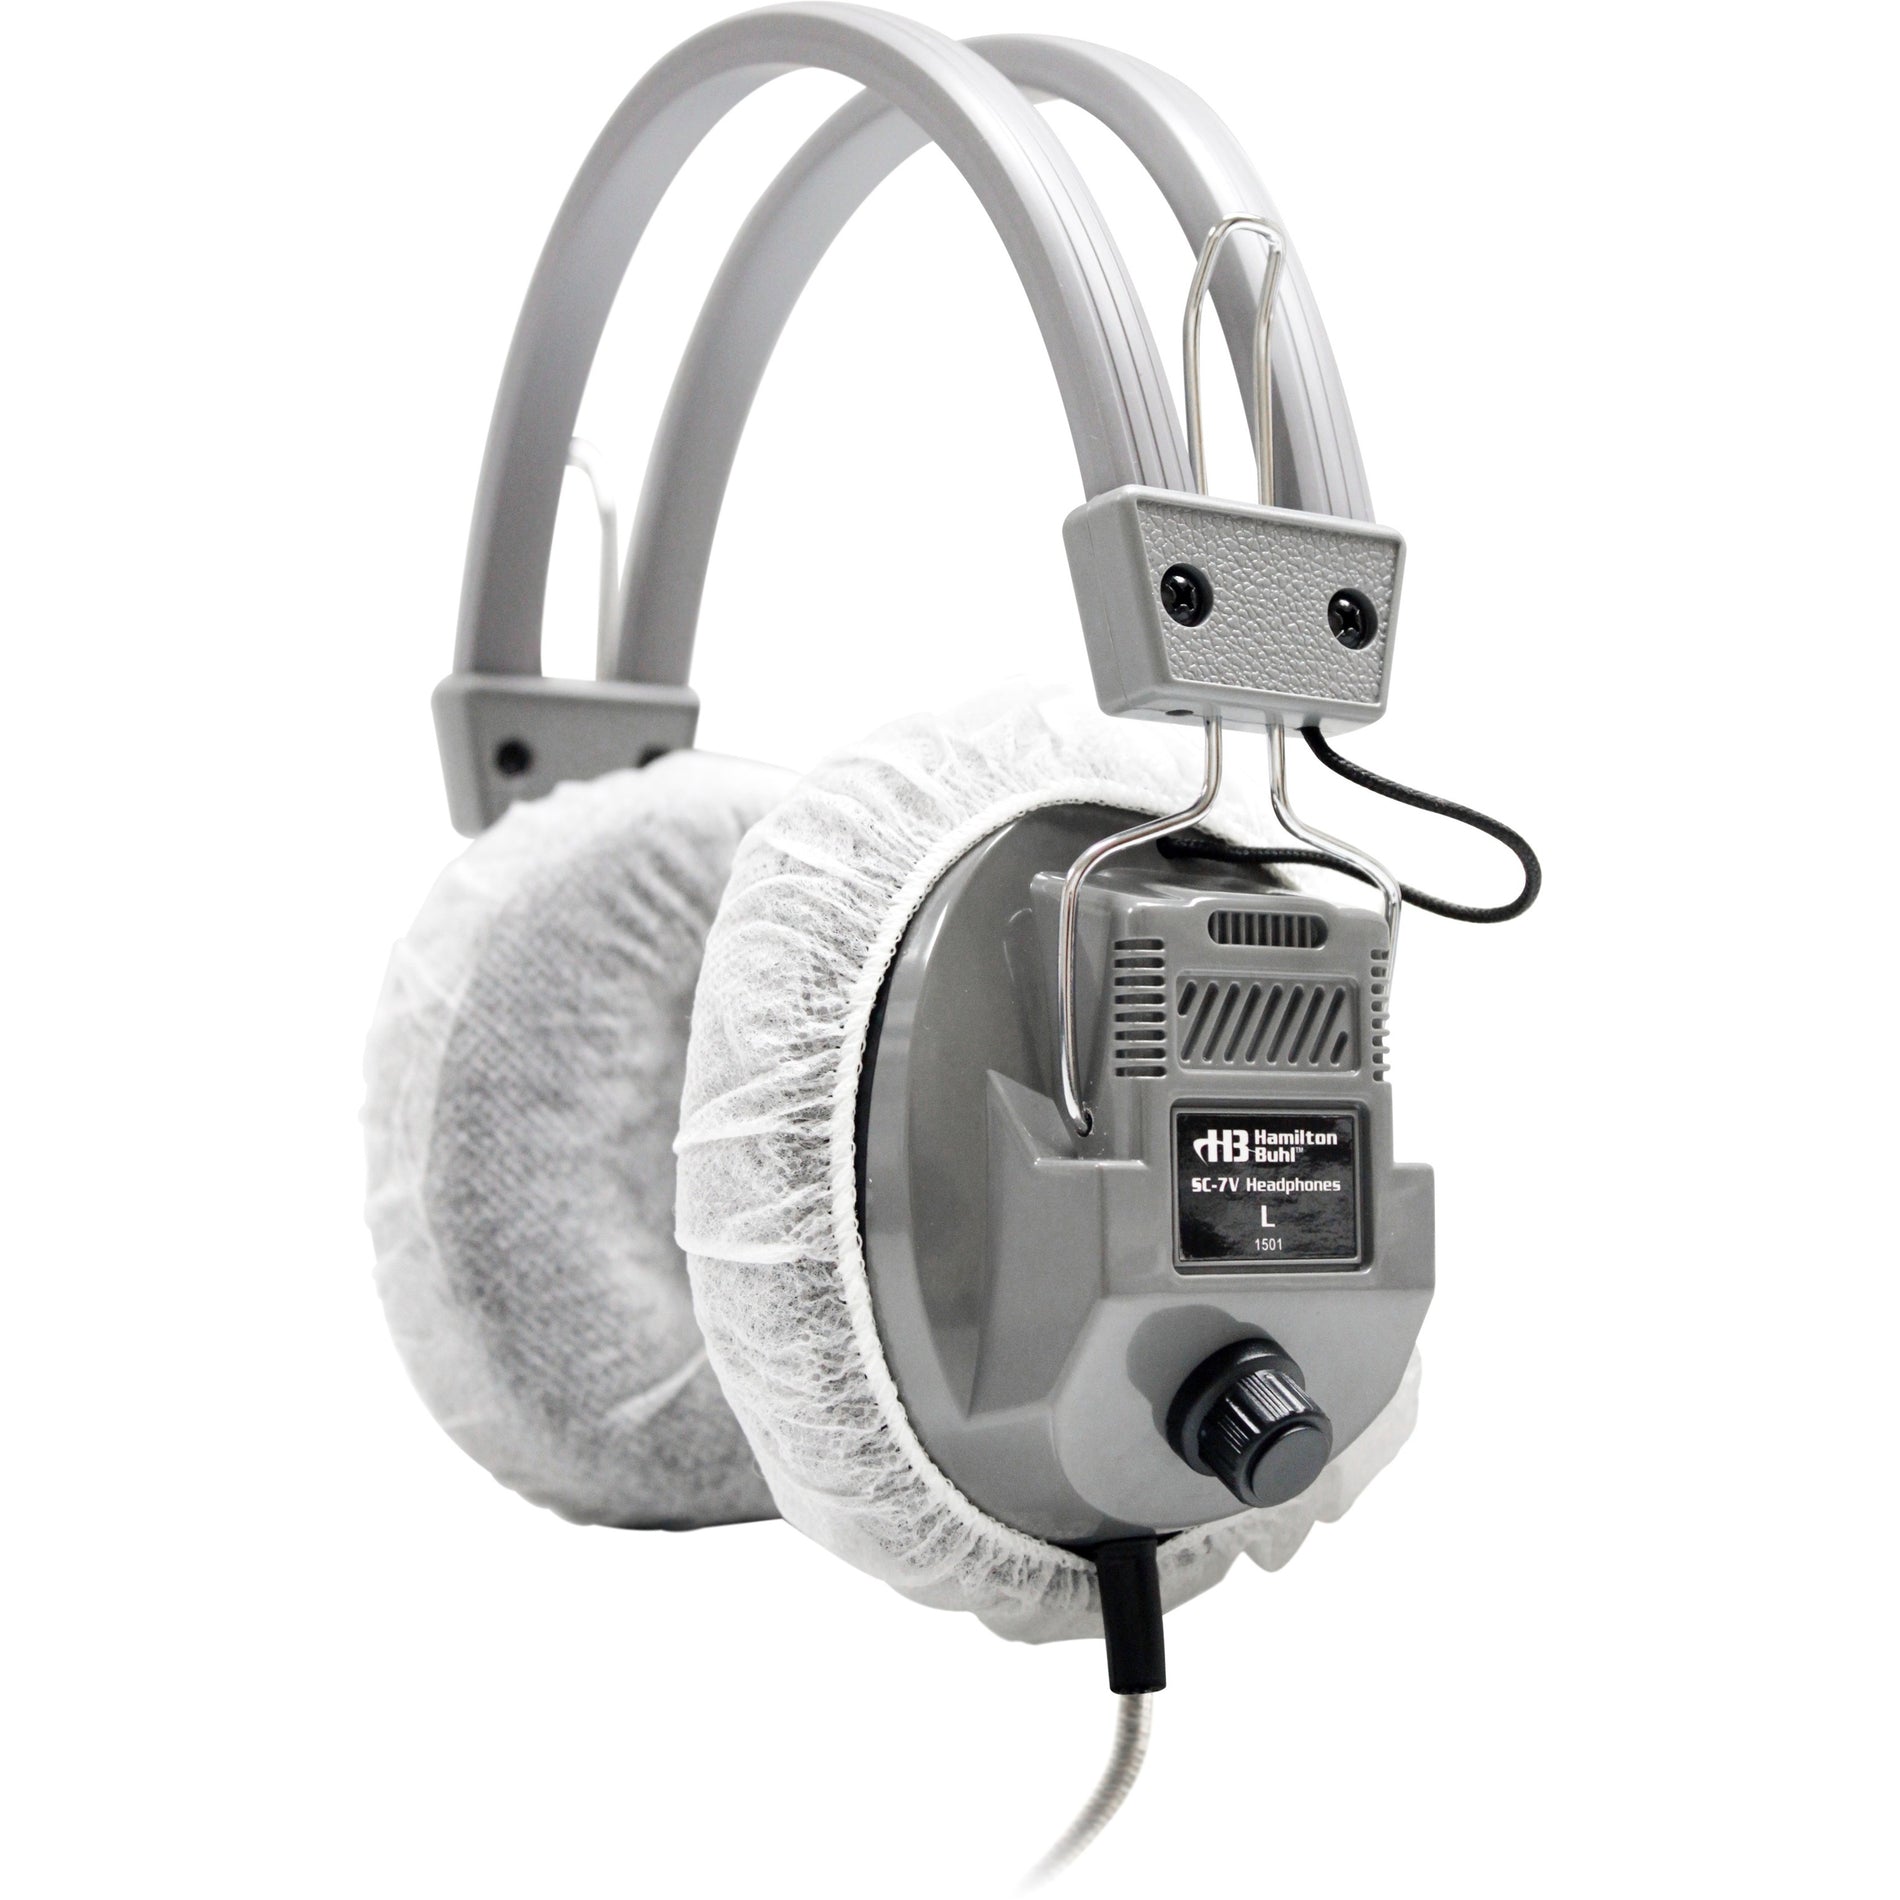 Ergoguys HYGENX45 HygenX Sanitary Ear Cushion Covers for Over-Ear Headphones & Headsets - 50 Pair White Disposable  Ergoguys HYGENX45 Coussinets de protection d'oreille hygiéniques HygenX pour casques et écouteurs sur l'oreille - 50 paires blanc jetables